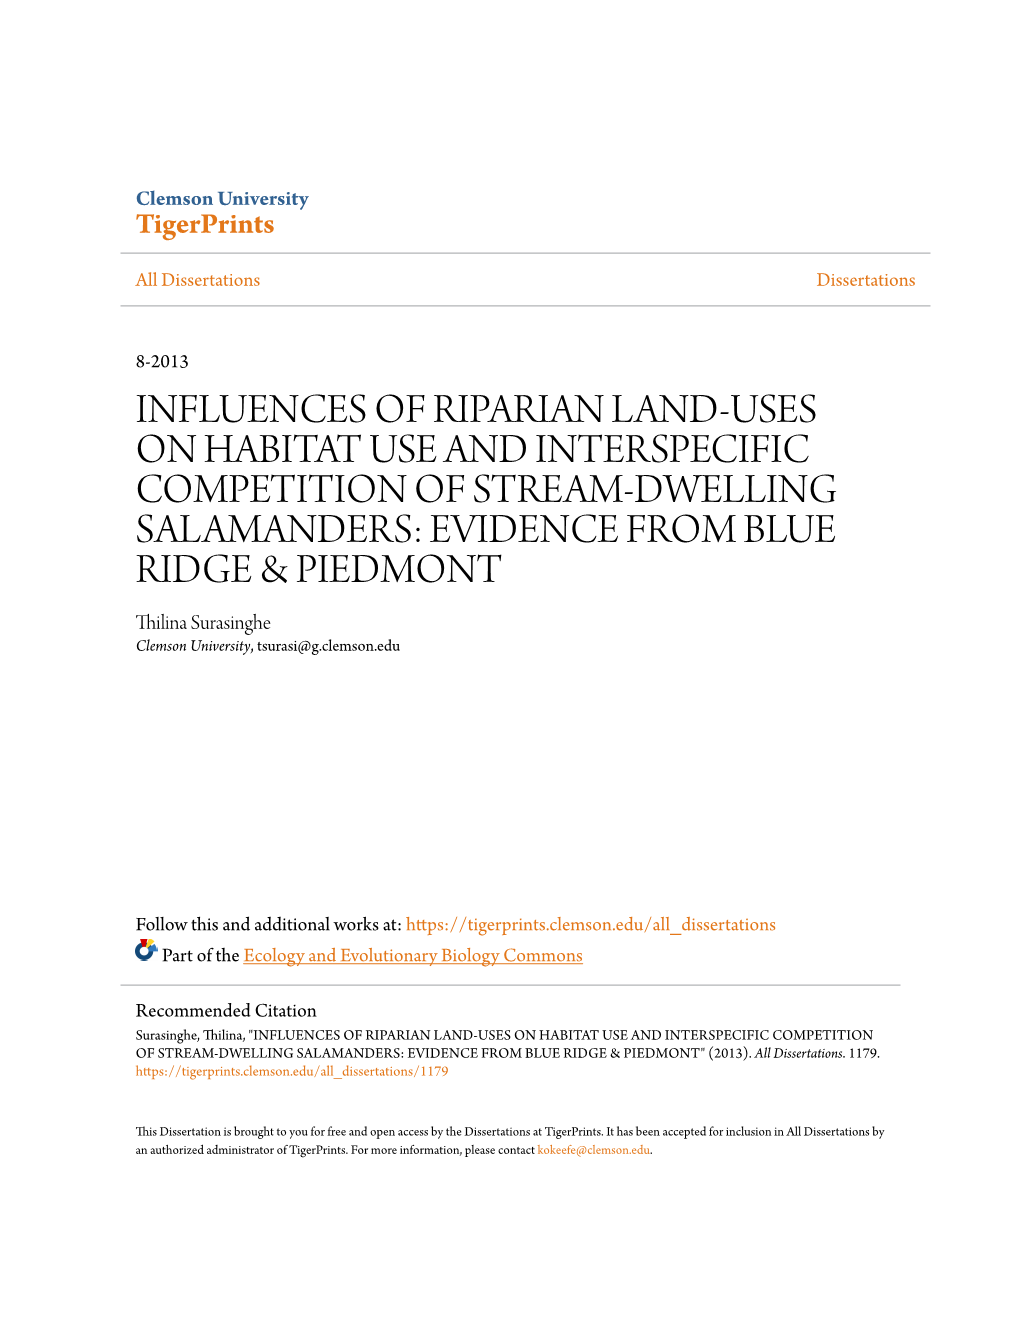 Influences of Riparian Land-Uses on Habitat Use